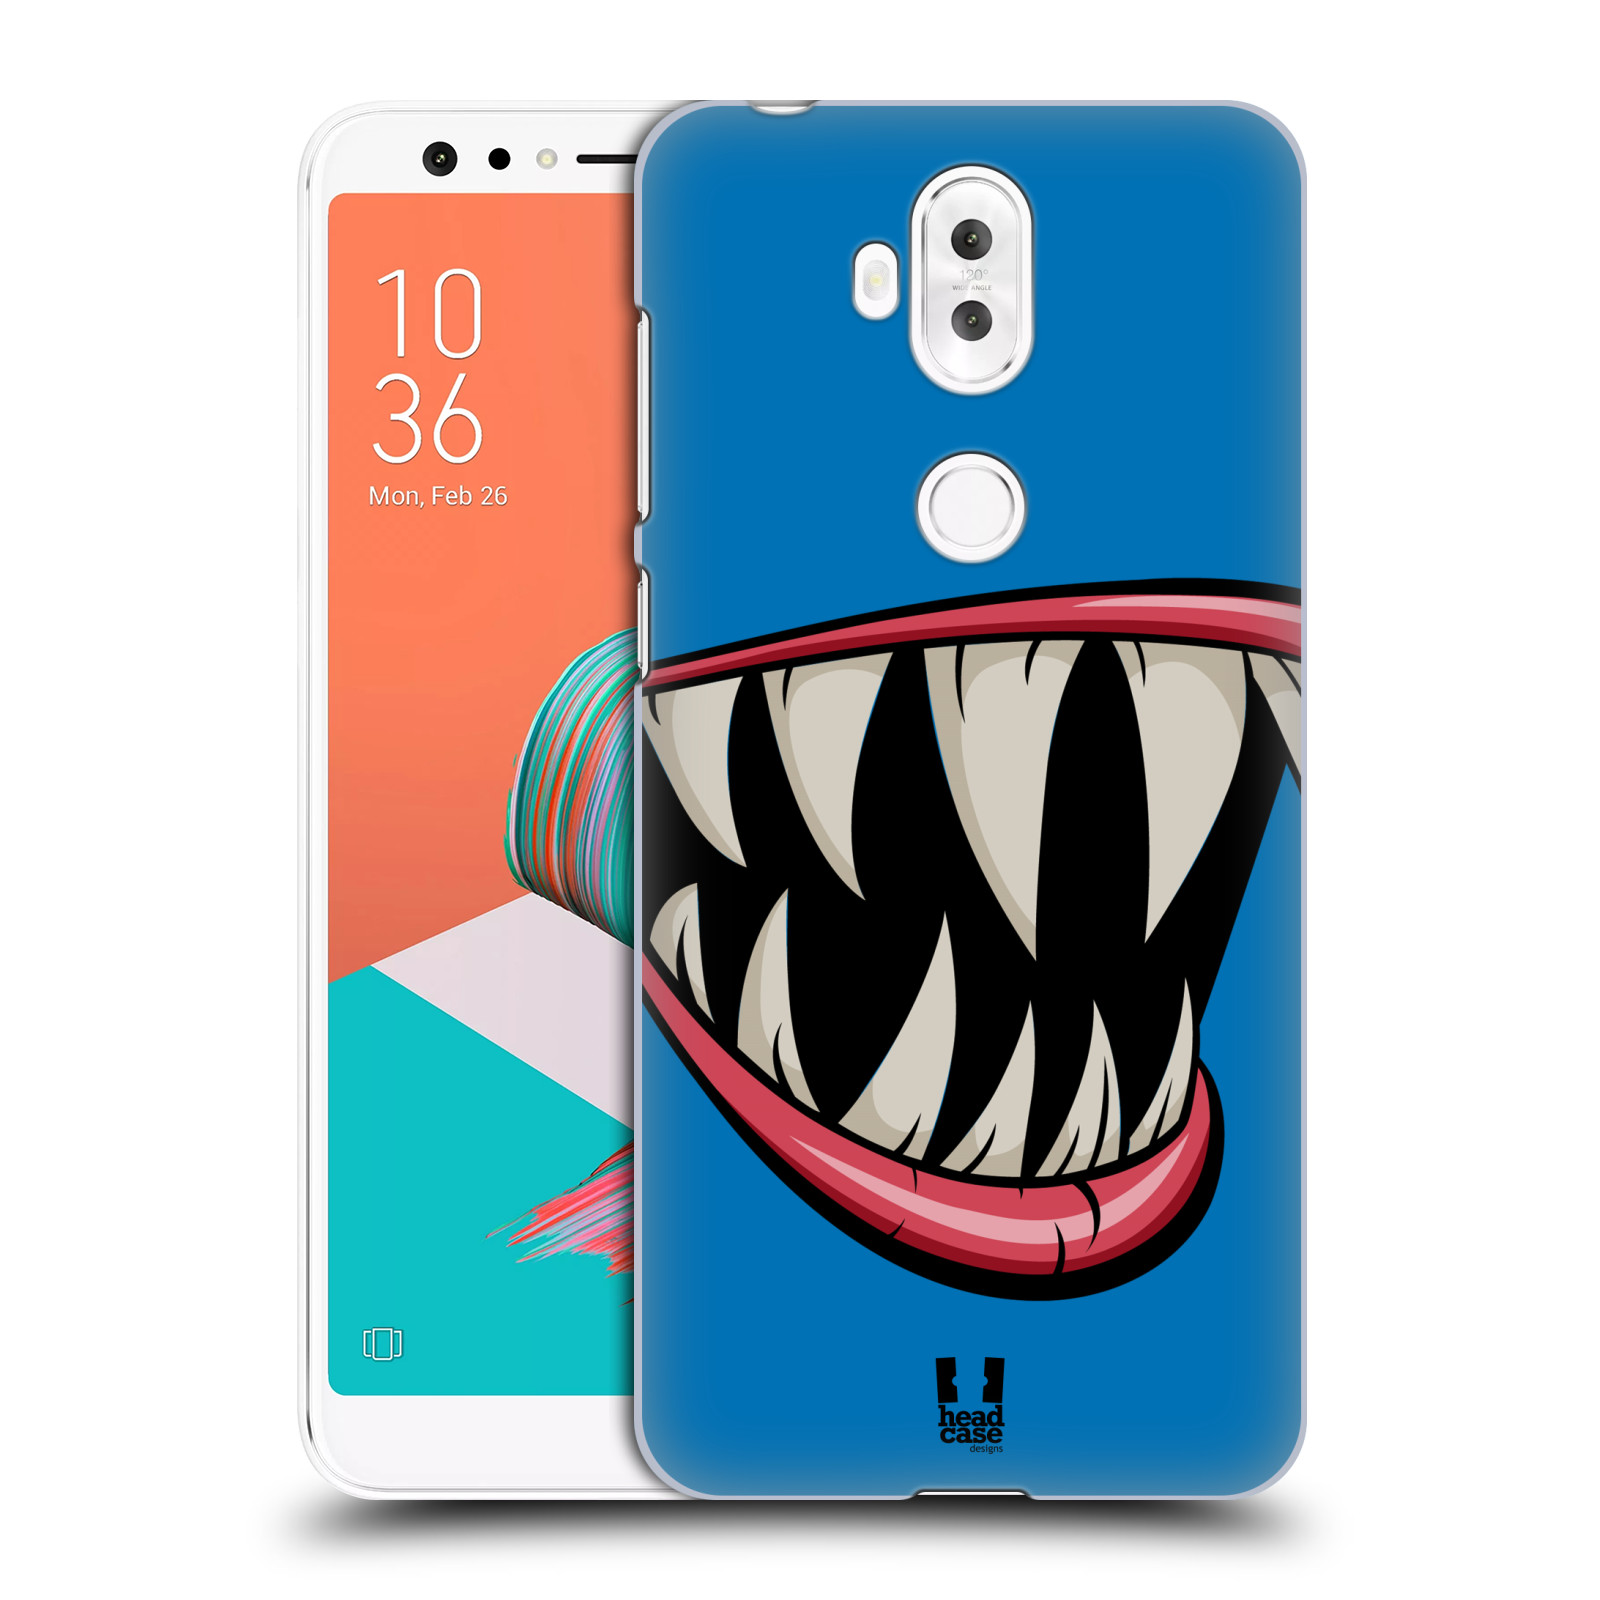 HEAD CASE plastový obal na mobil Asus Zenfone 5 LITE ZC600KL vzor Zvířecí úsměv ryba modrá